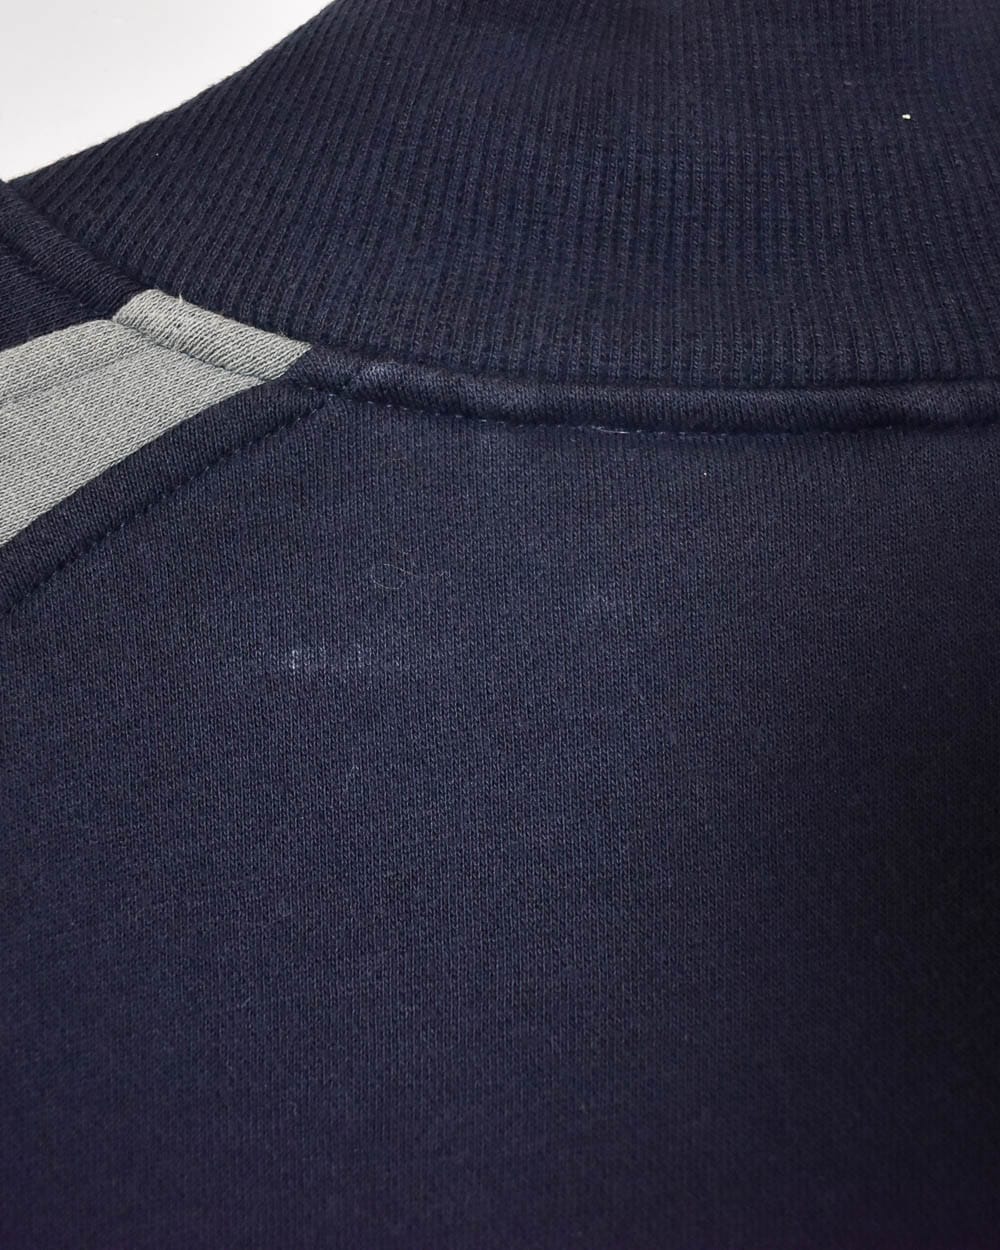 Navy Adidas Zip-Through Sweatshirt - X-Large